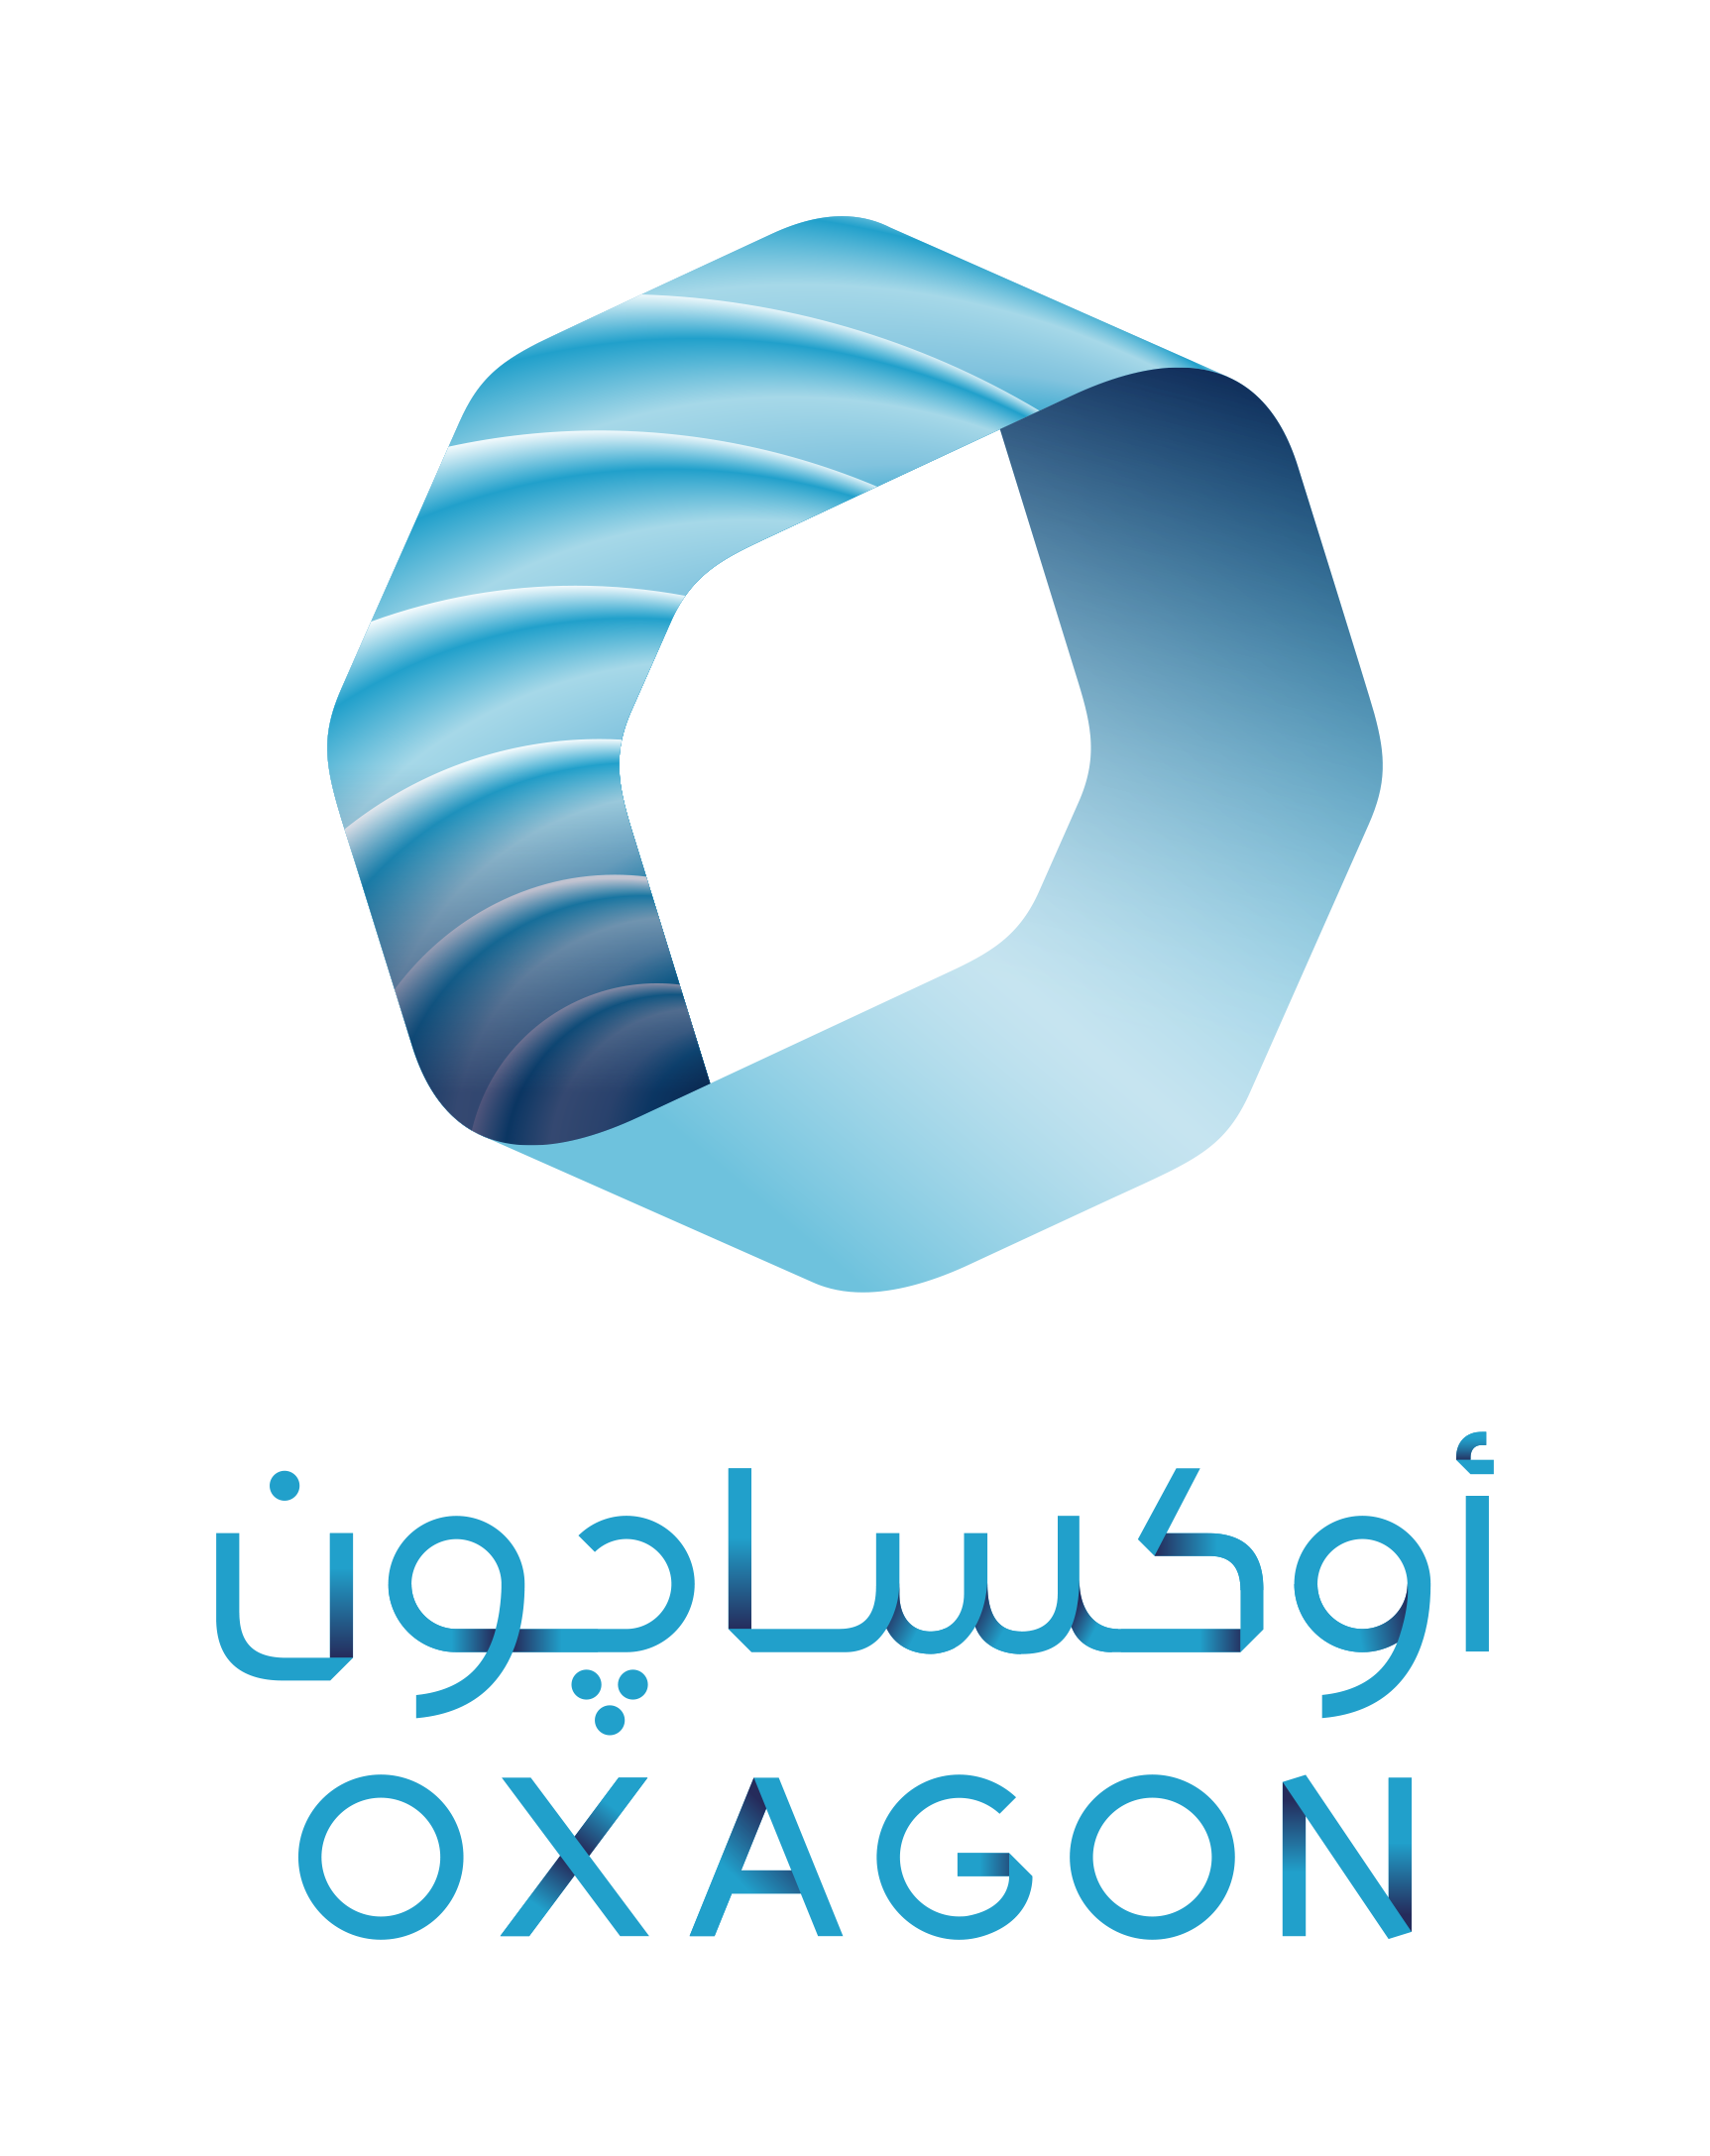 oxagon hackathon